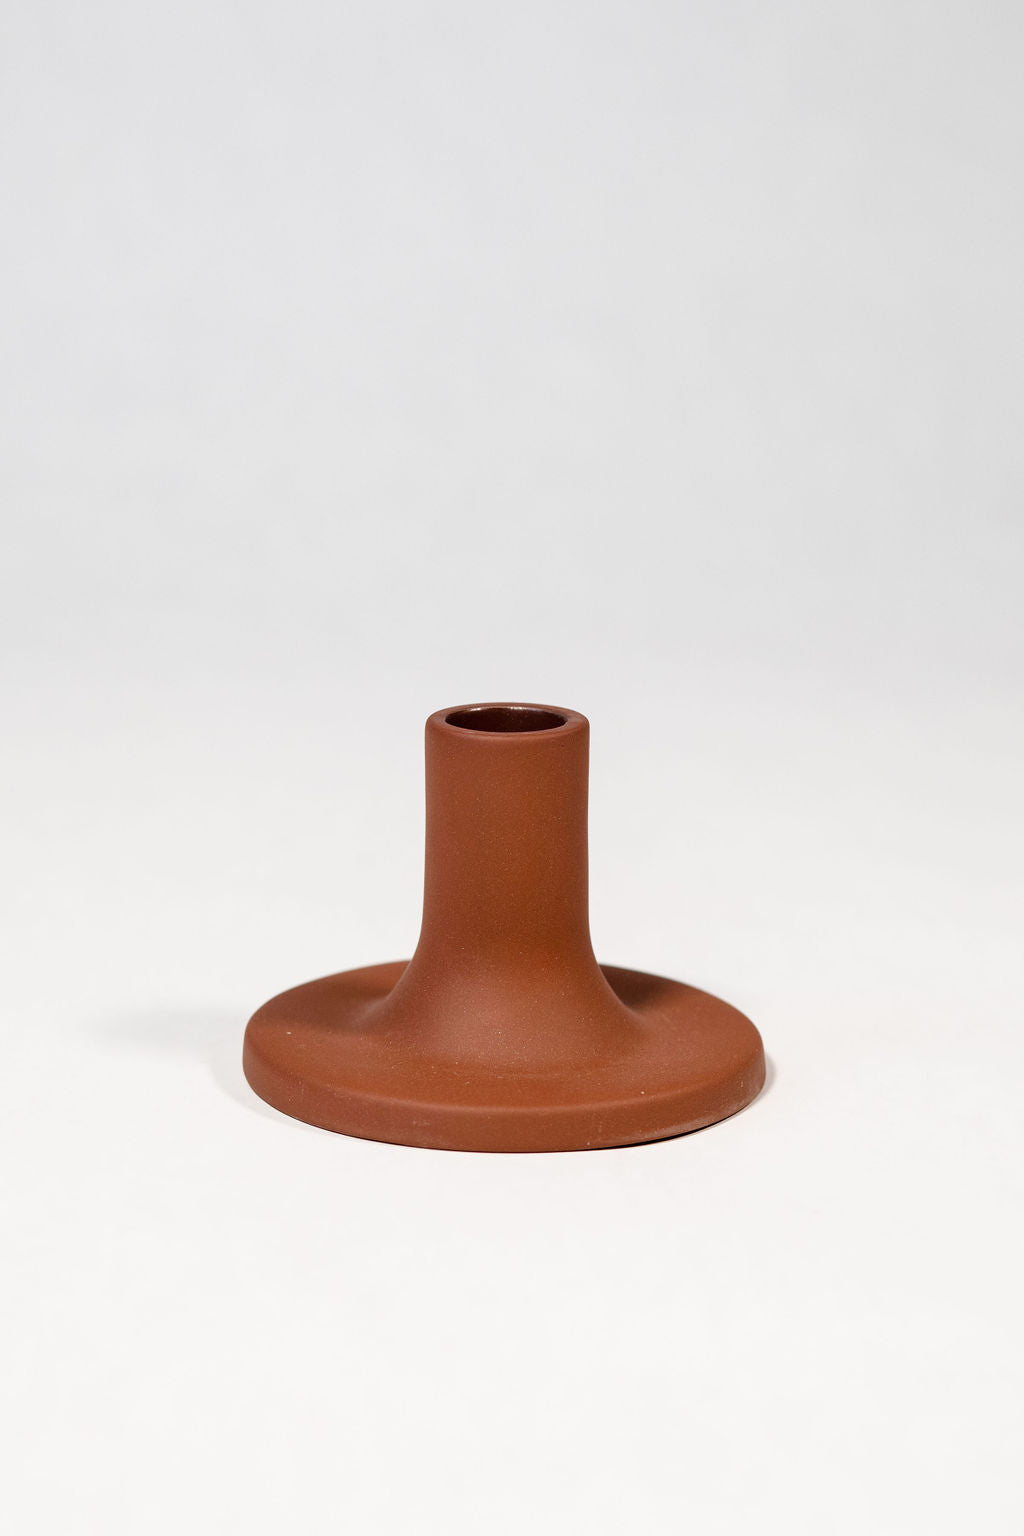 Ceramic Taper Holder - Medium